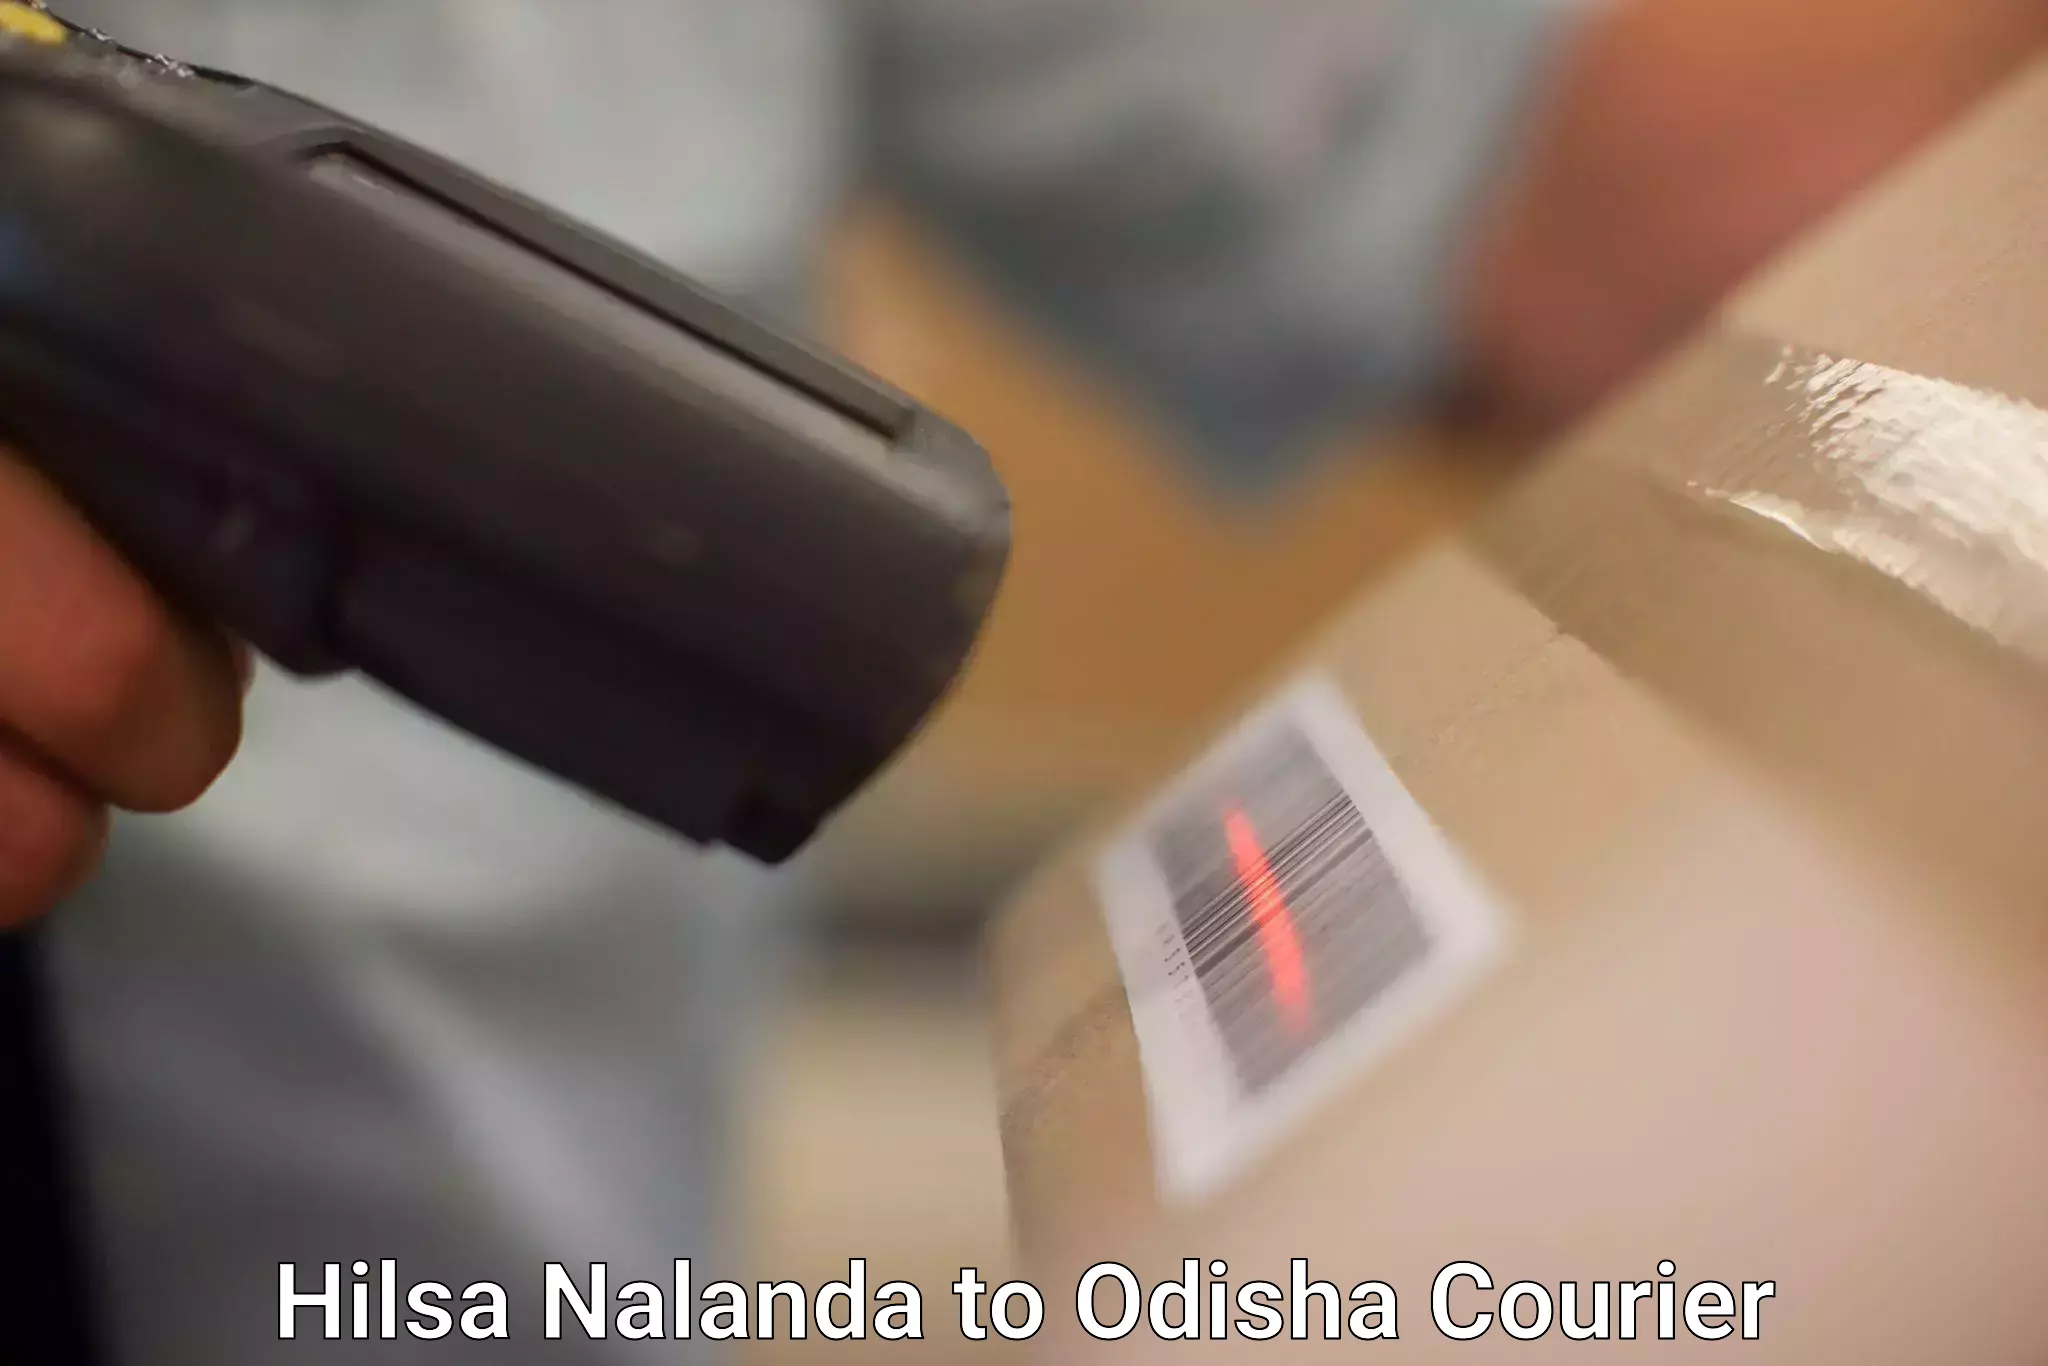 Expedited shipping methods Hilsa Nalanda to Odisha